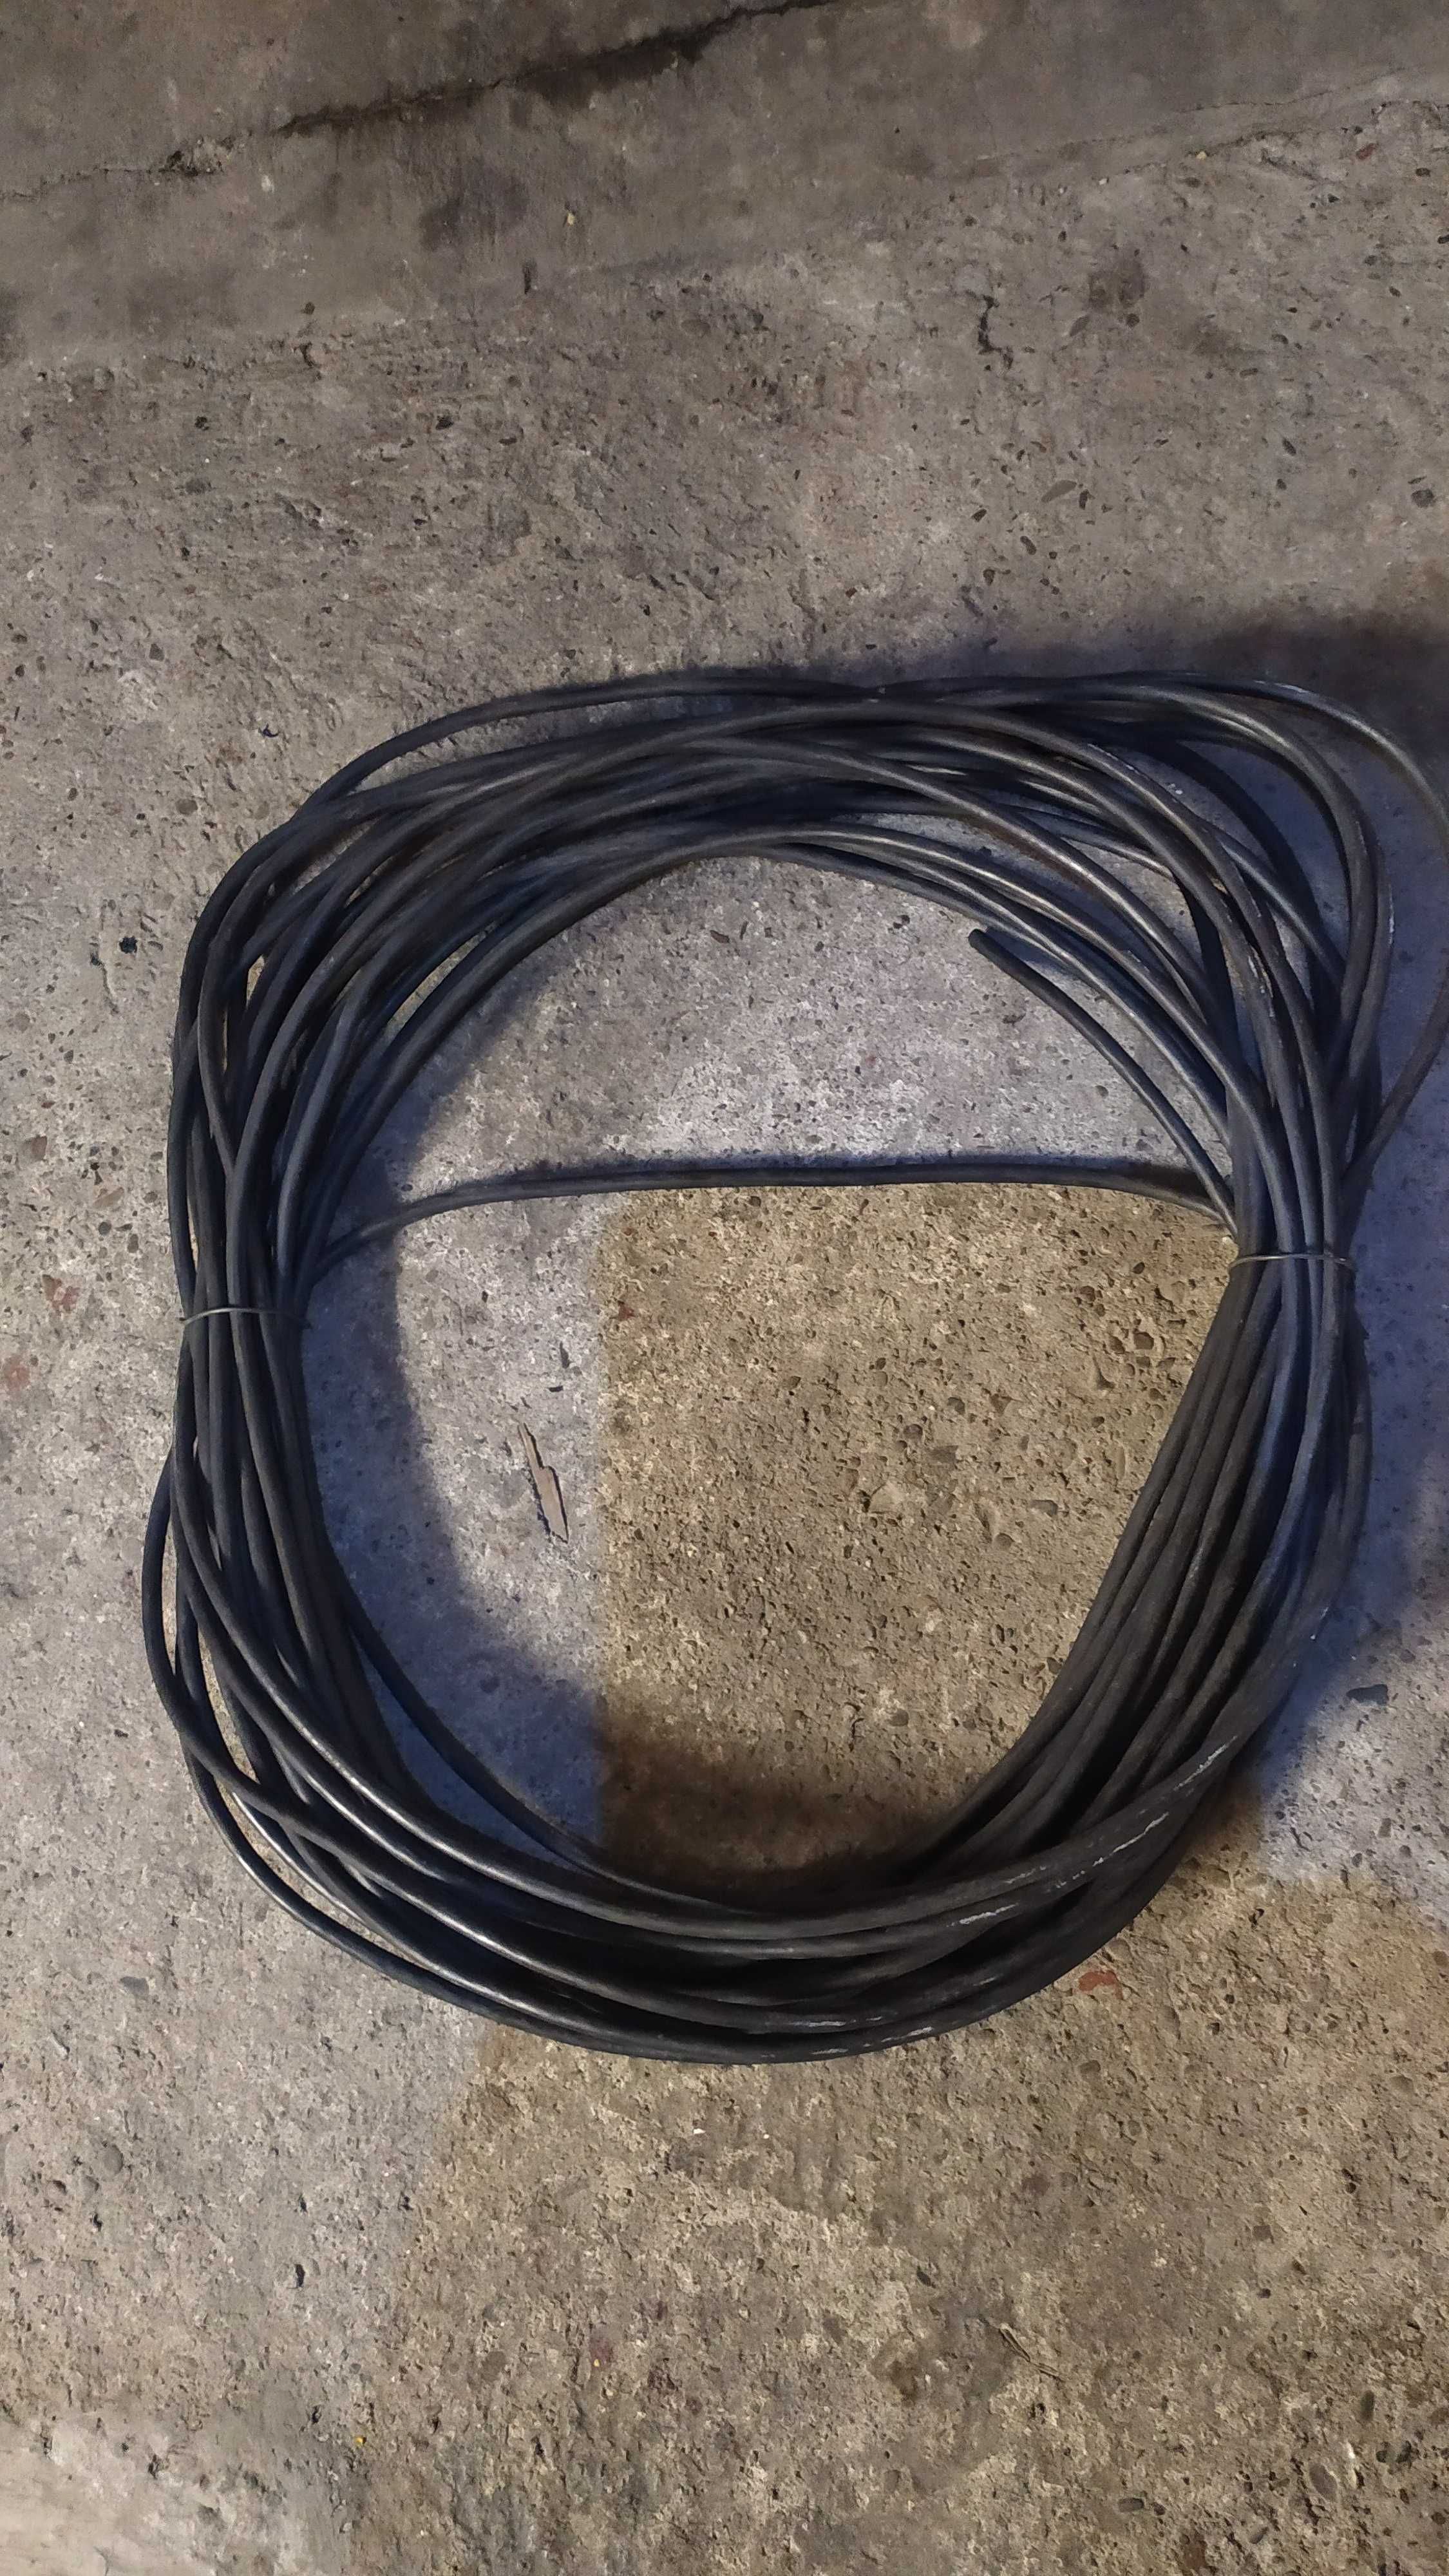 Kabel 4x15mm2 w igielicie 35 mb